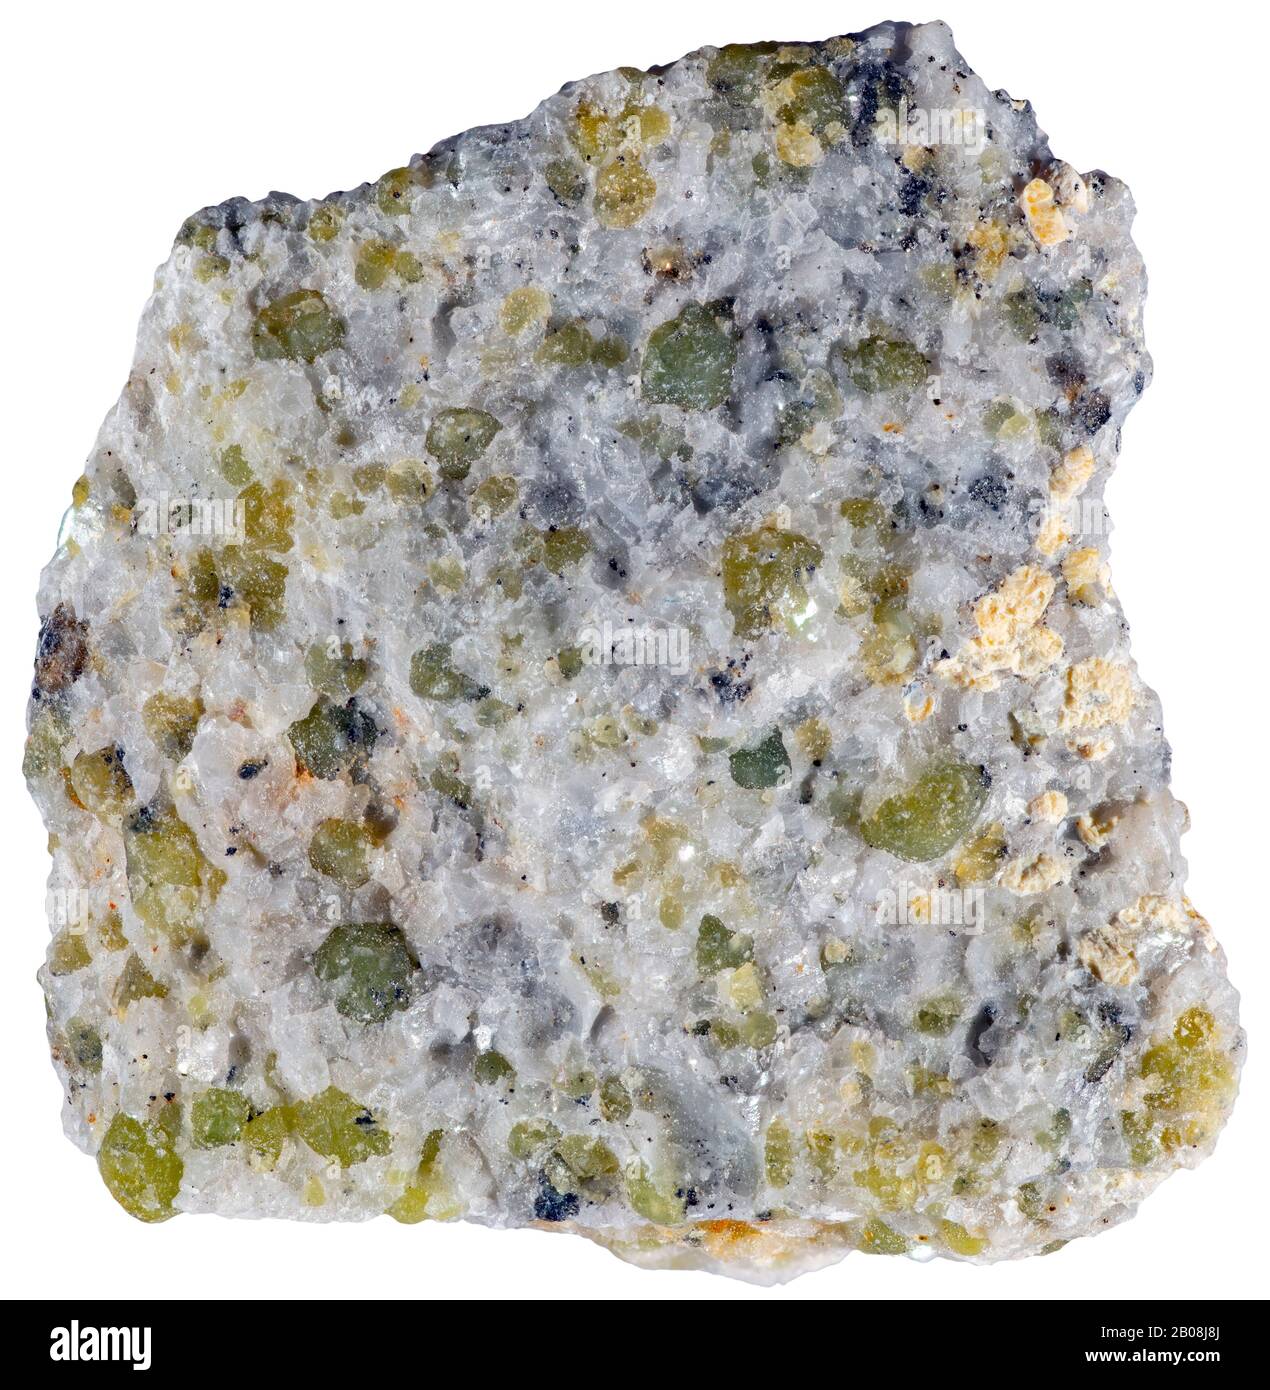 Picotite, Lanark, Ontario Une variété brun foncé d'hercynite qui contient du chrome, du magnésium et du fer et qui se retrouve couramment dans les dunites. Banque D'Images